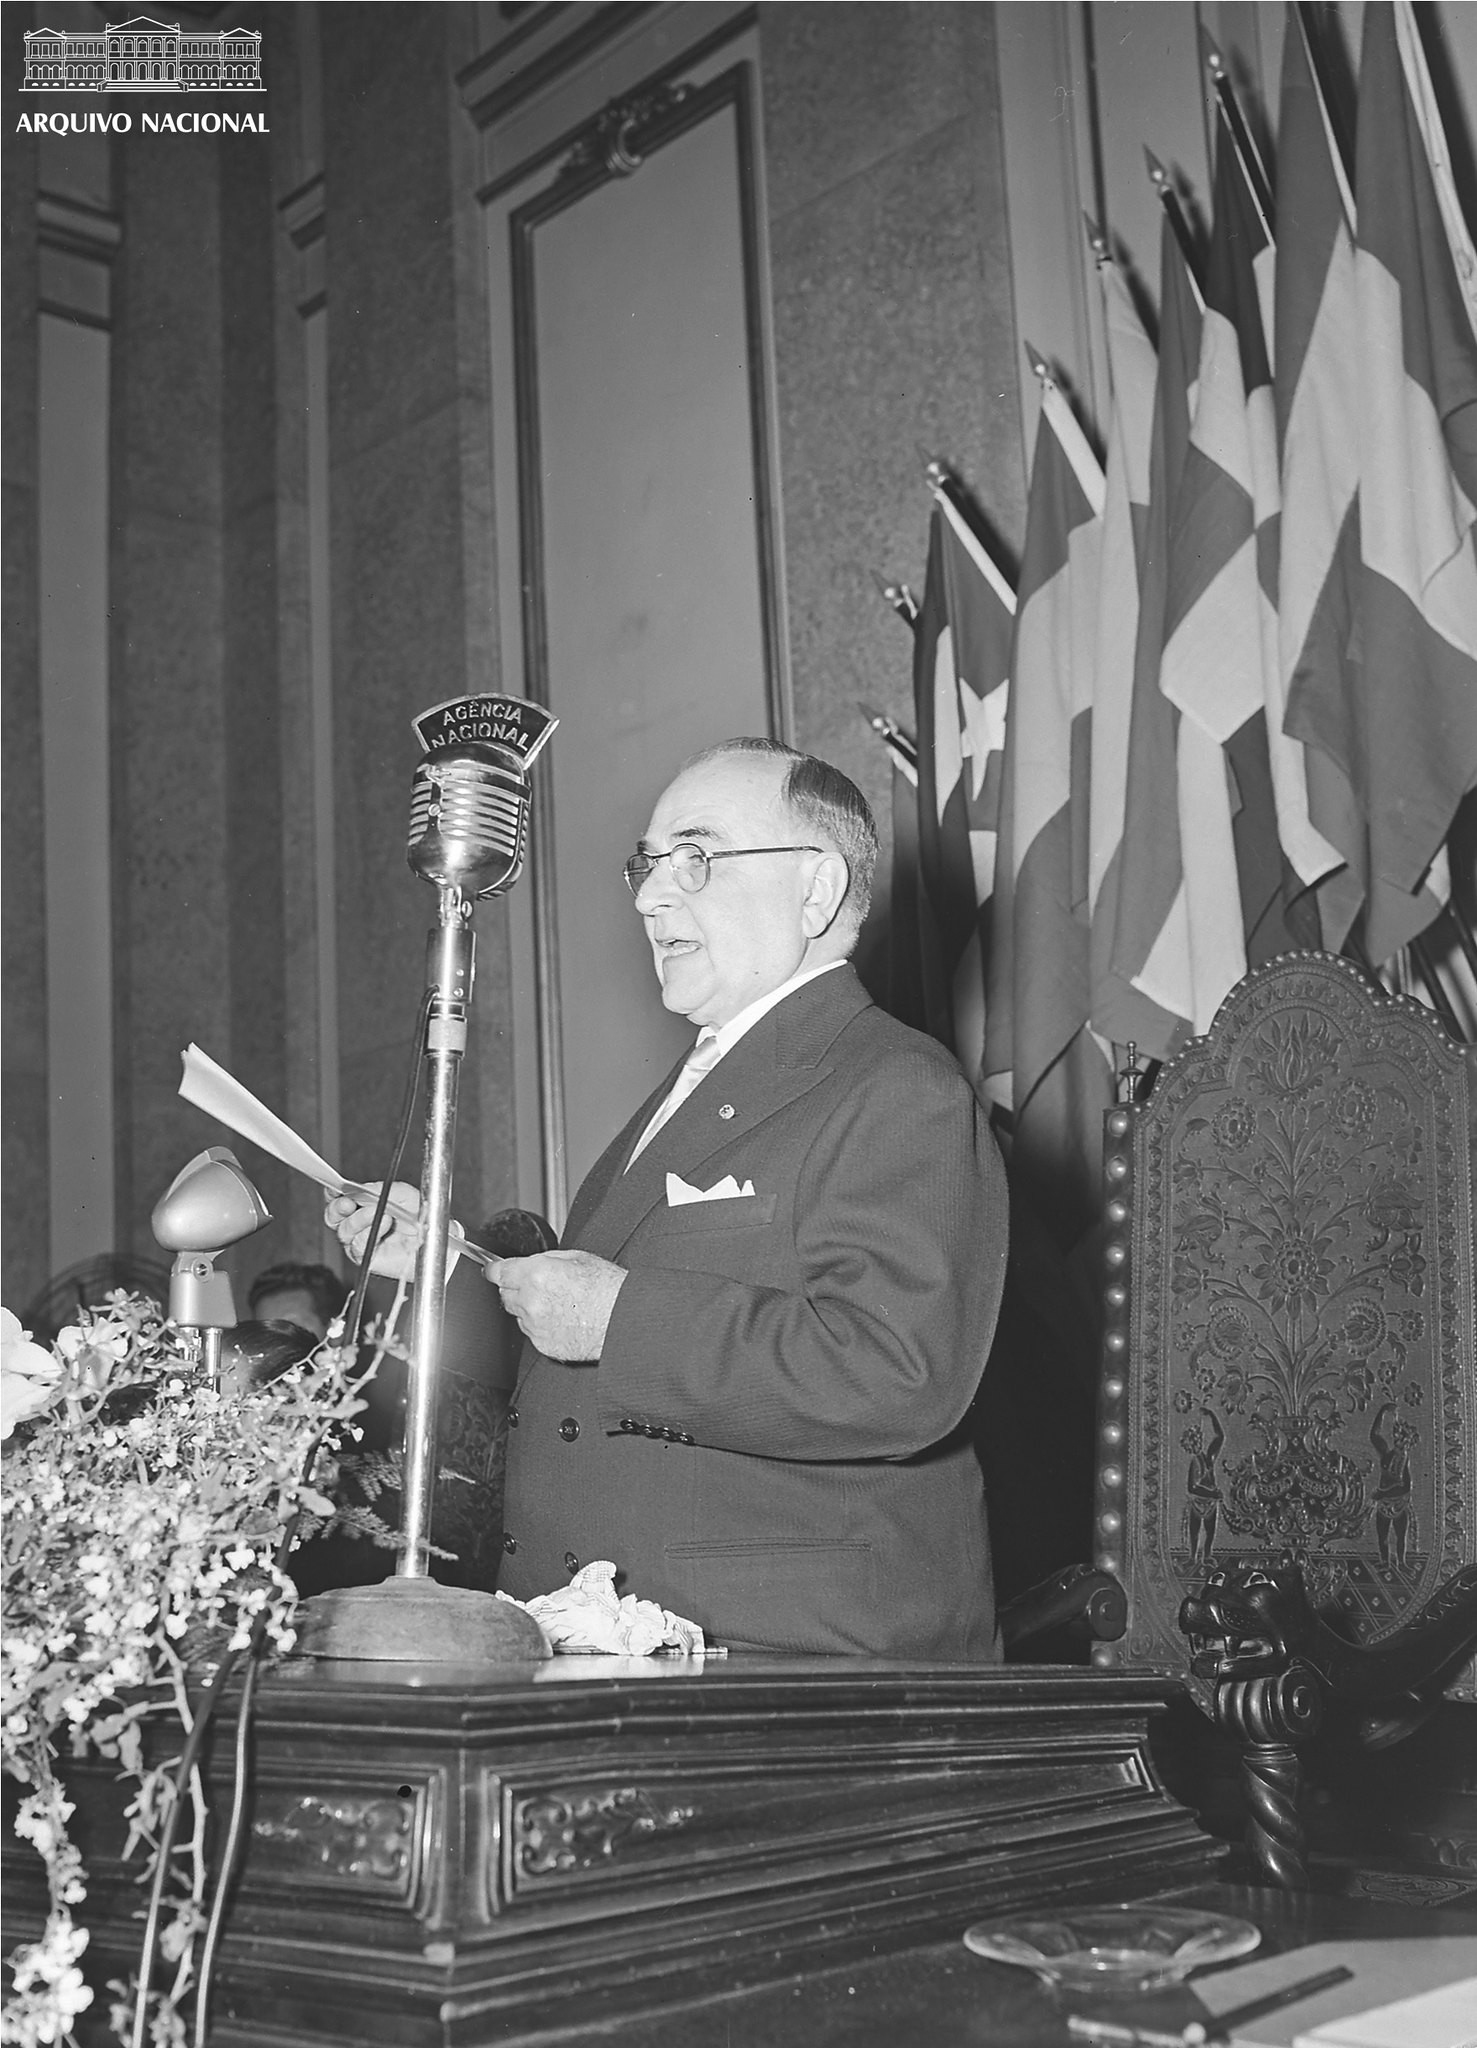 Presidente Getúlio Vargas discursando no I Congresso da União Latina, no Palácio Itamaraty, Rio de Janeiro, em 1951 (Foto: Arquivo Nacional/Fundo Agência Nacional)